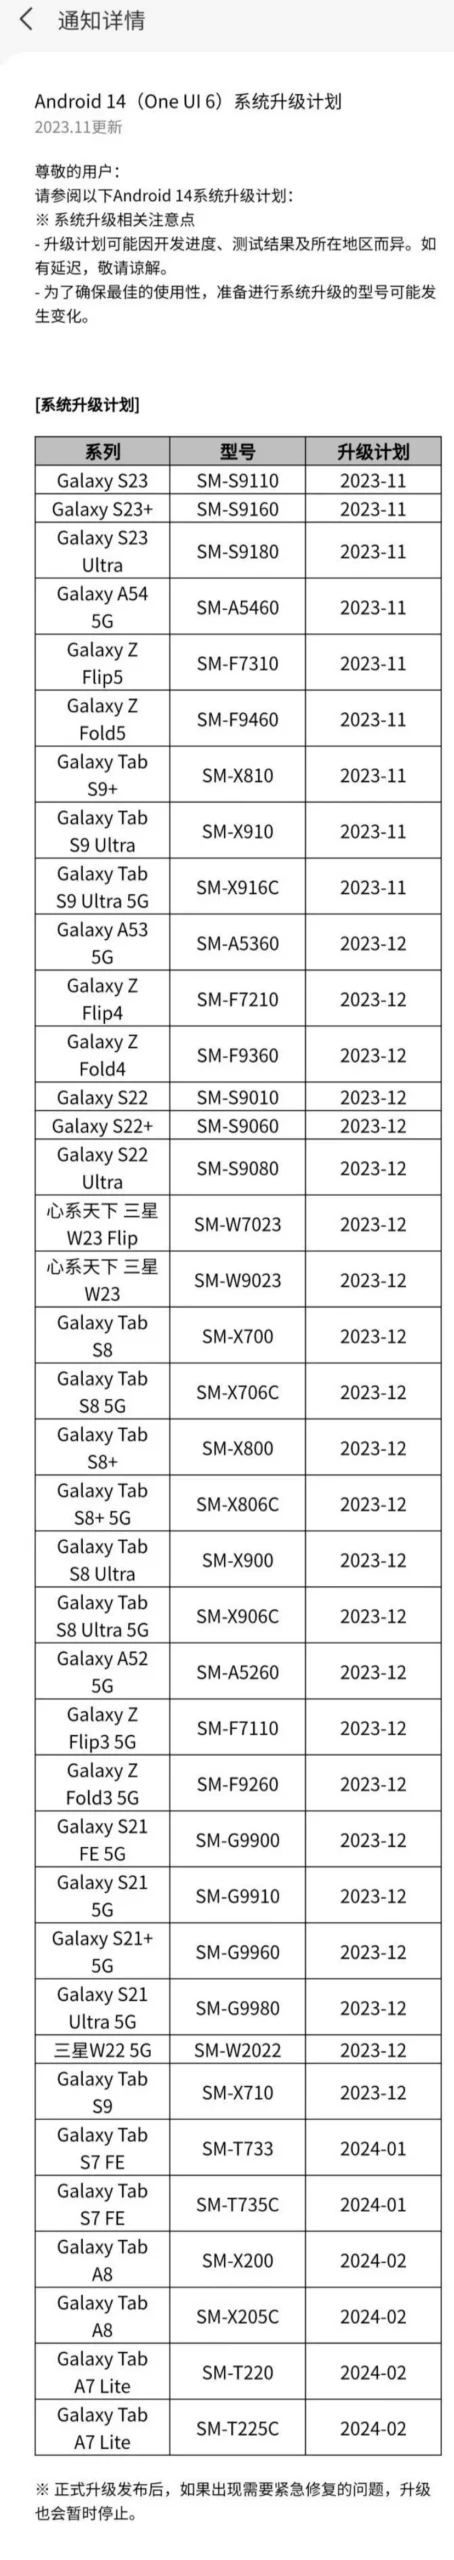 三星盖乐世社区发布Android 14和One UI 6中国升级时间表 S23等机型11月升正式版